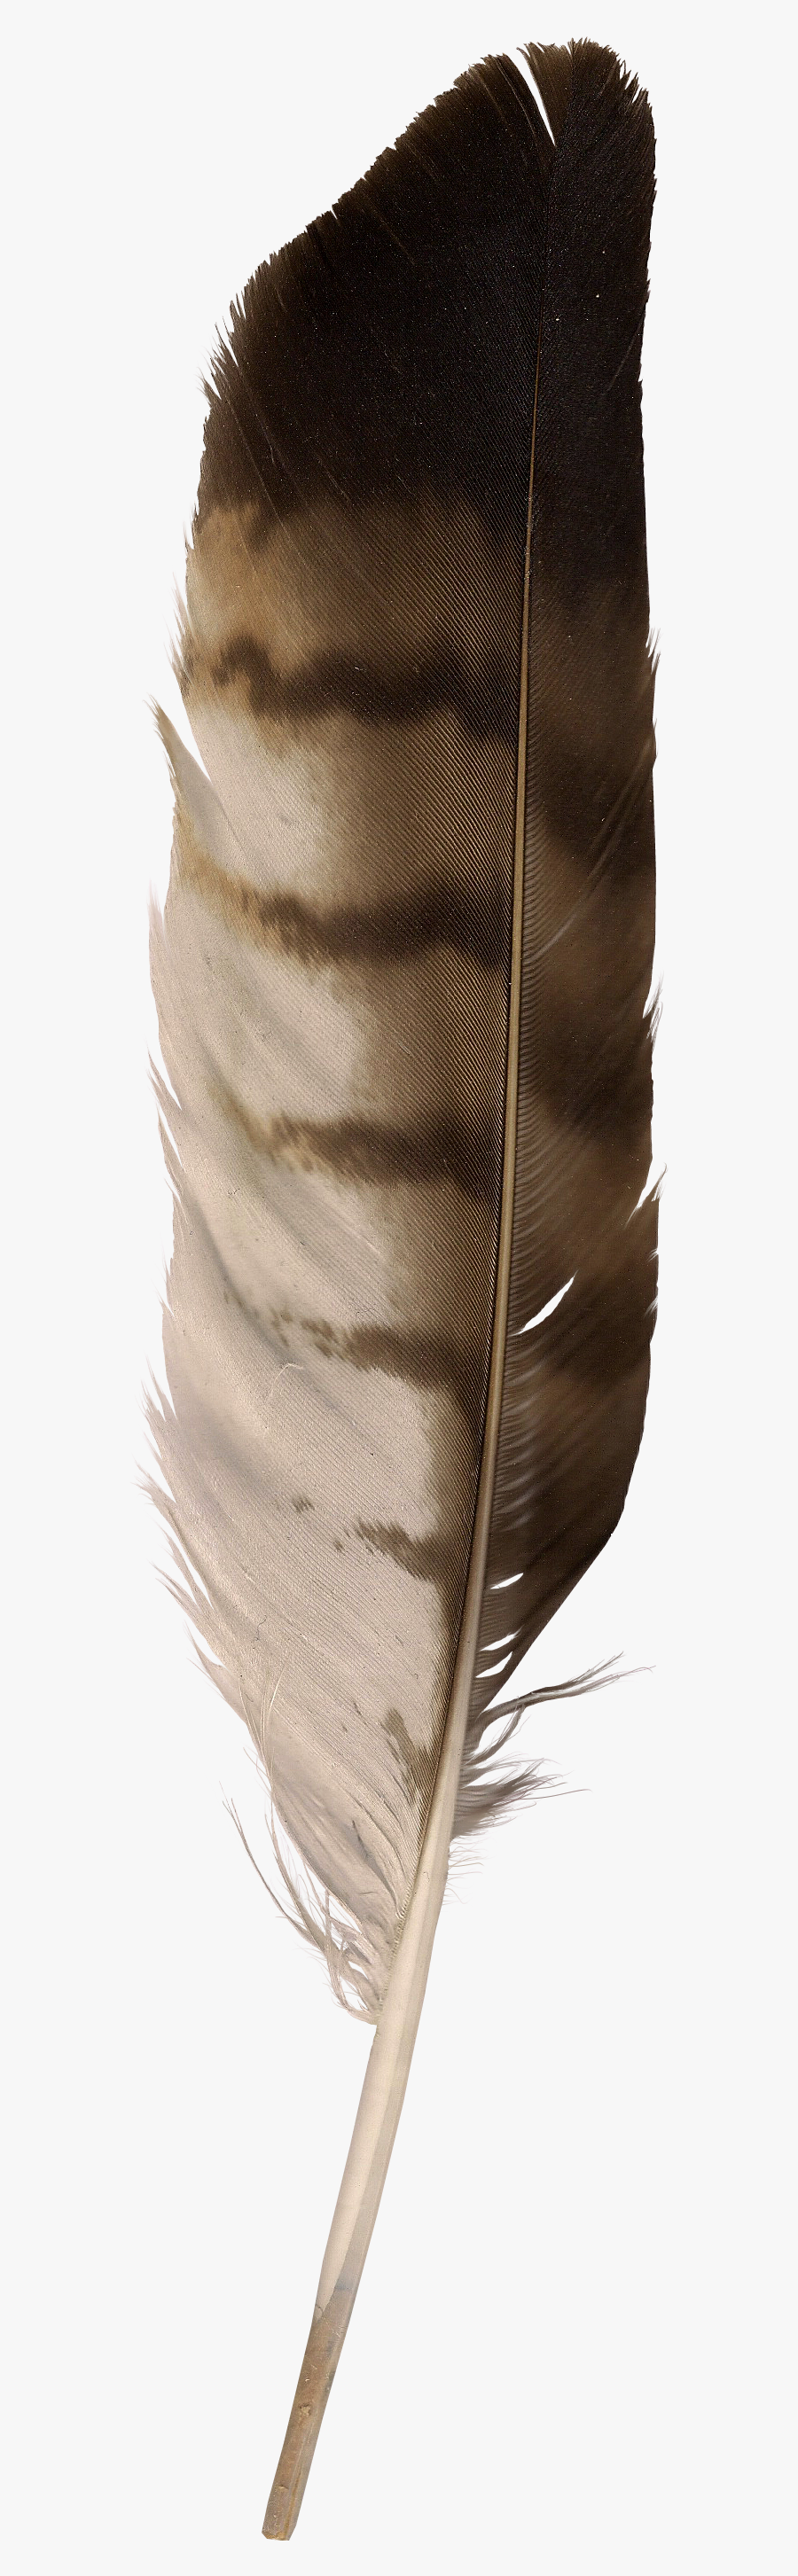 Eagle Feather Clip Art, Transparent Clipart